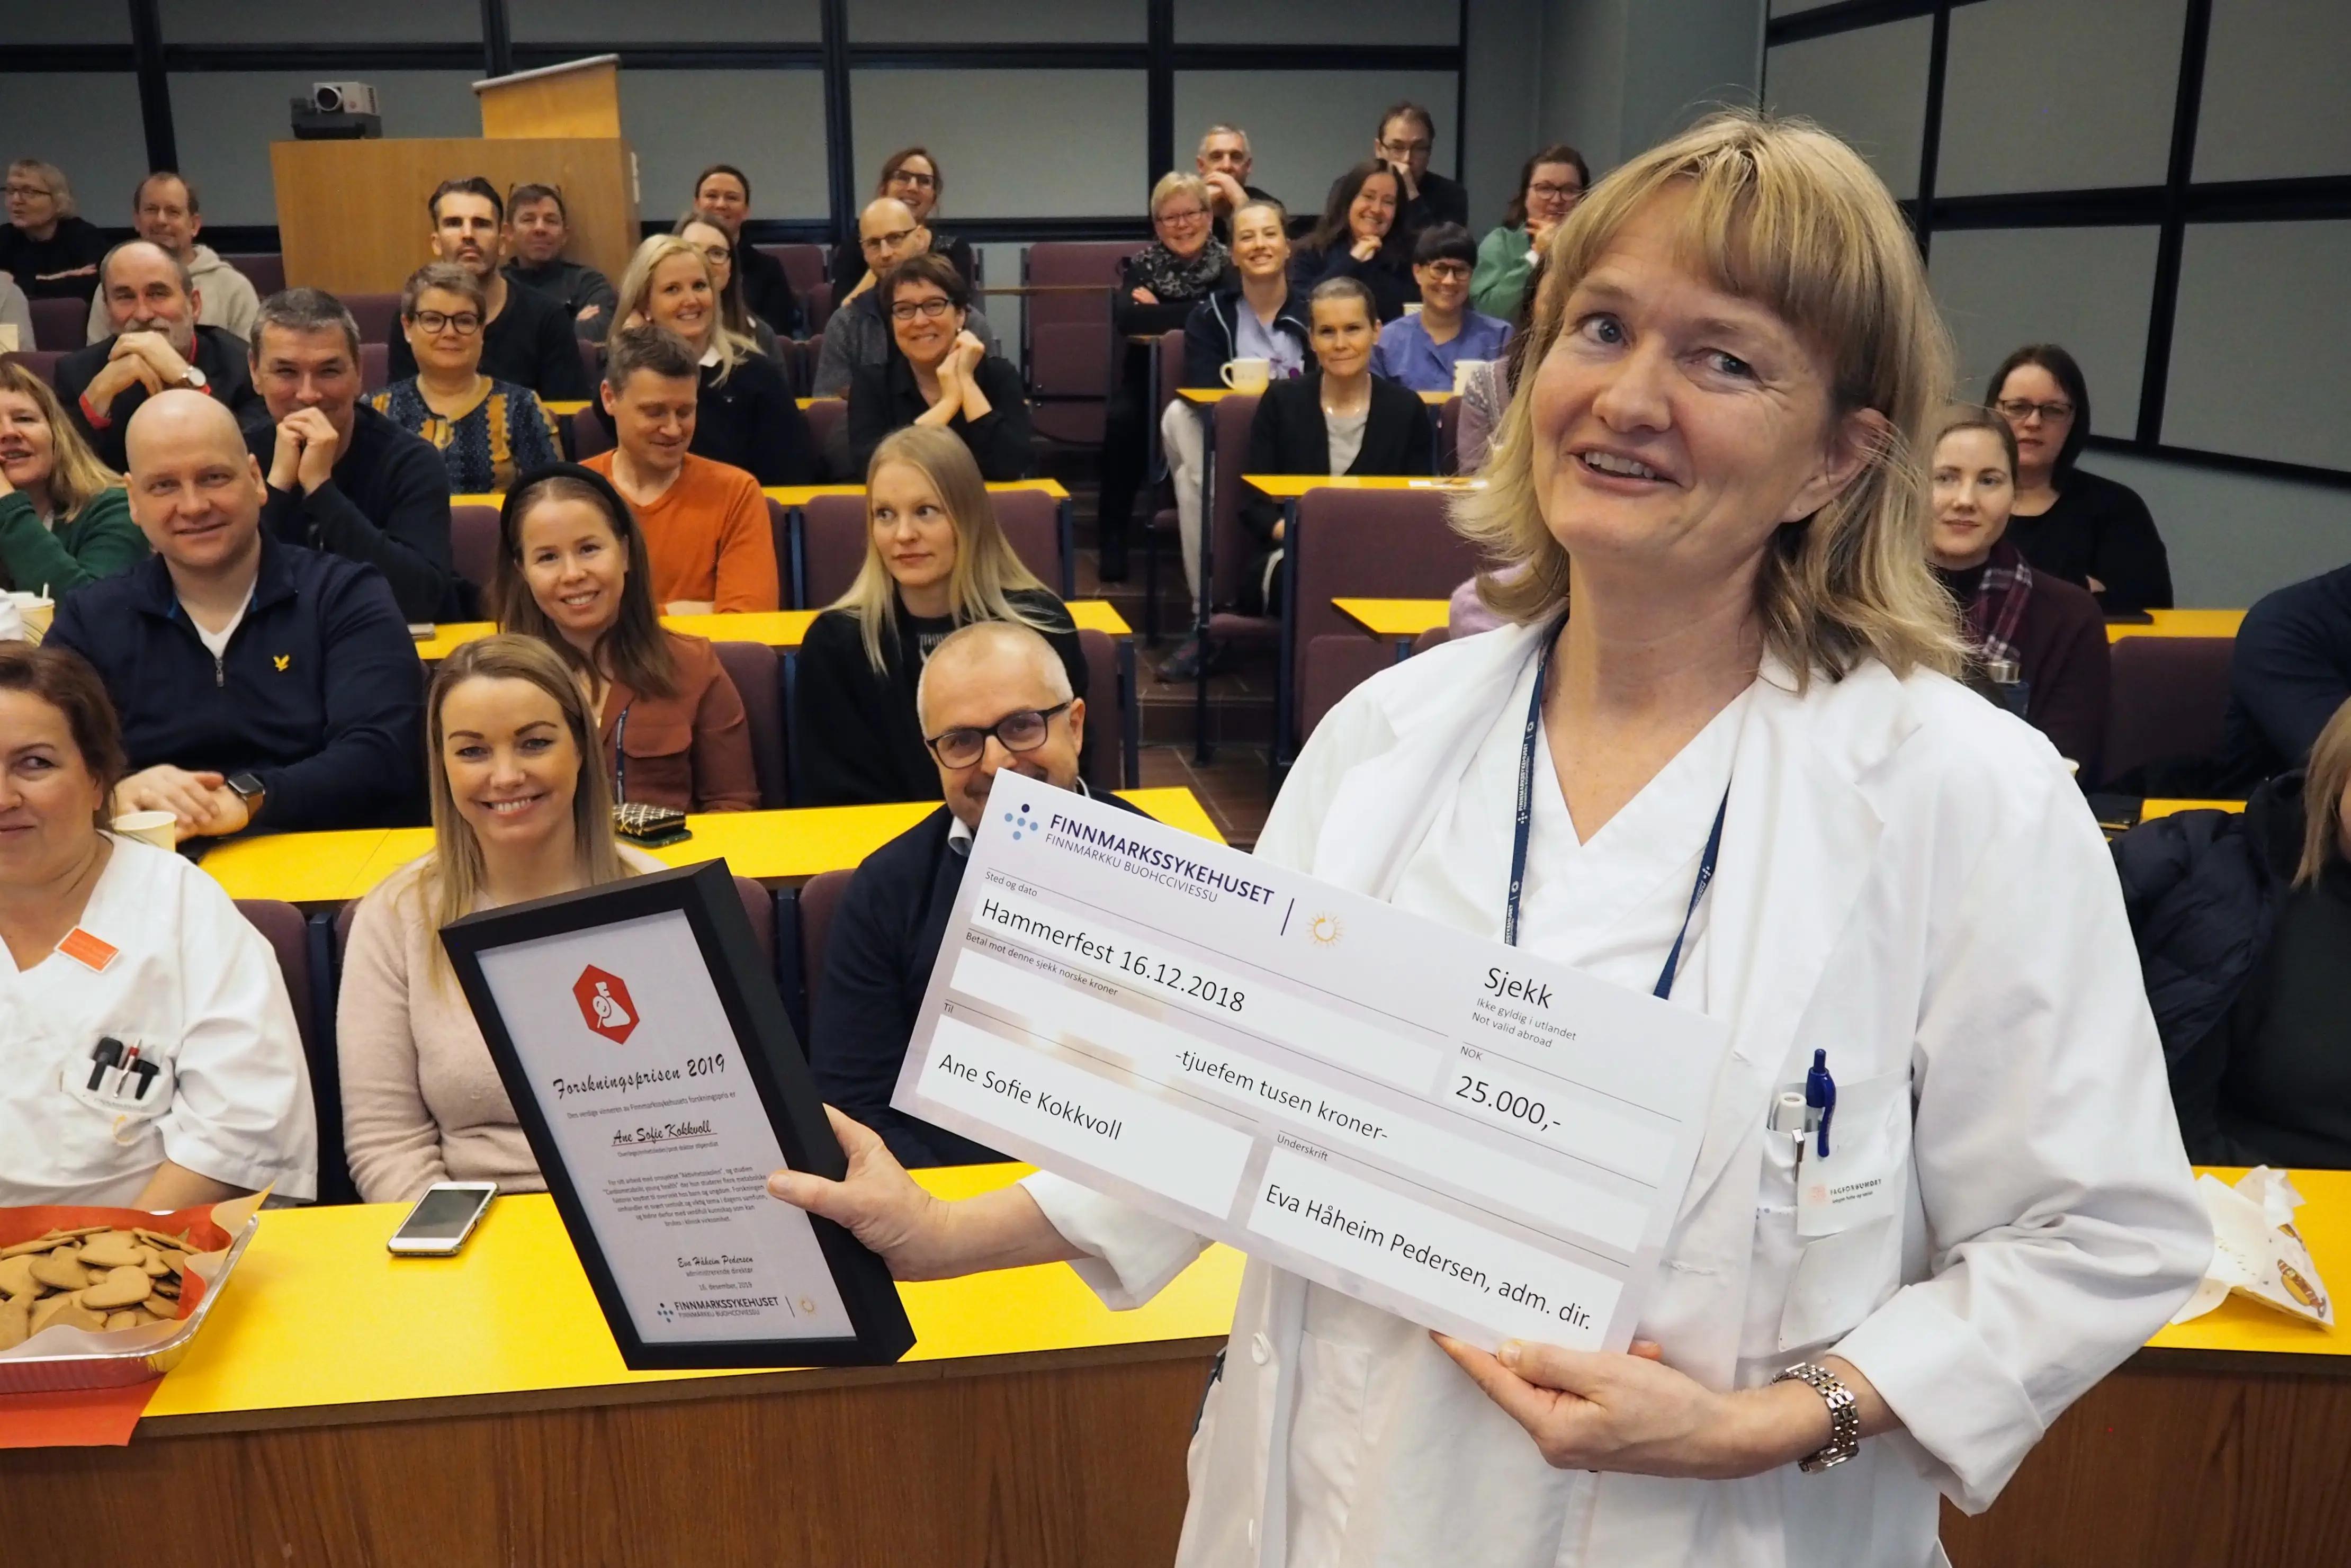 Ane Kokkvoll mottar Forskningsprisen 2019 for arbeidet med Aktivitetsskolen. 